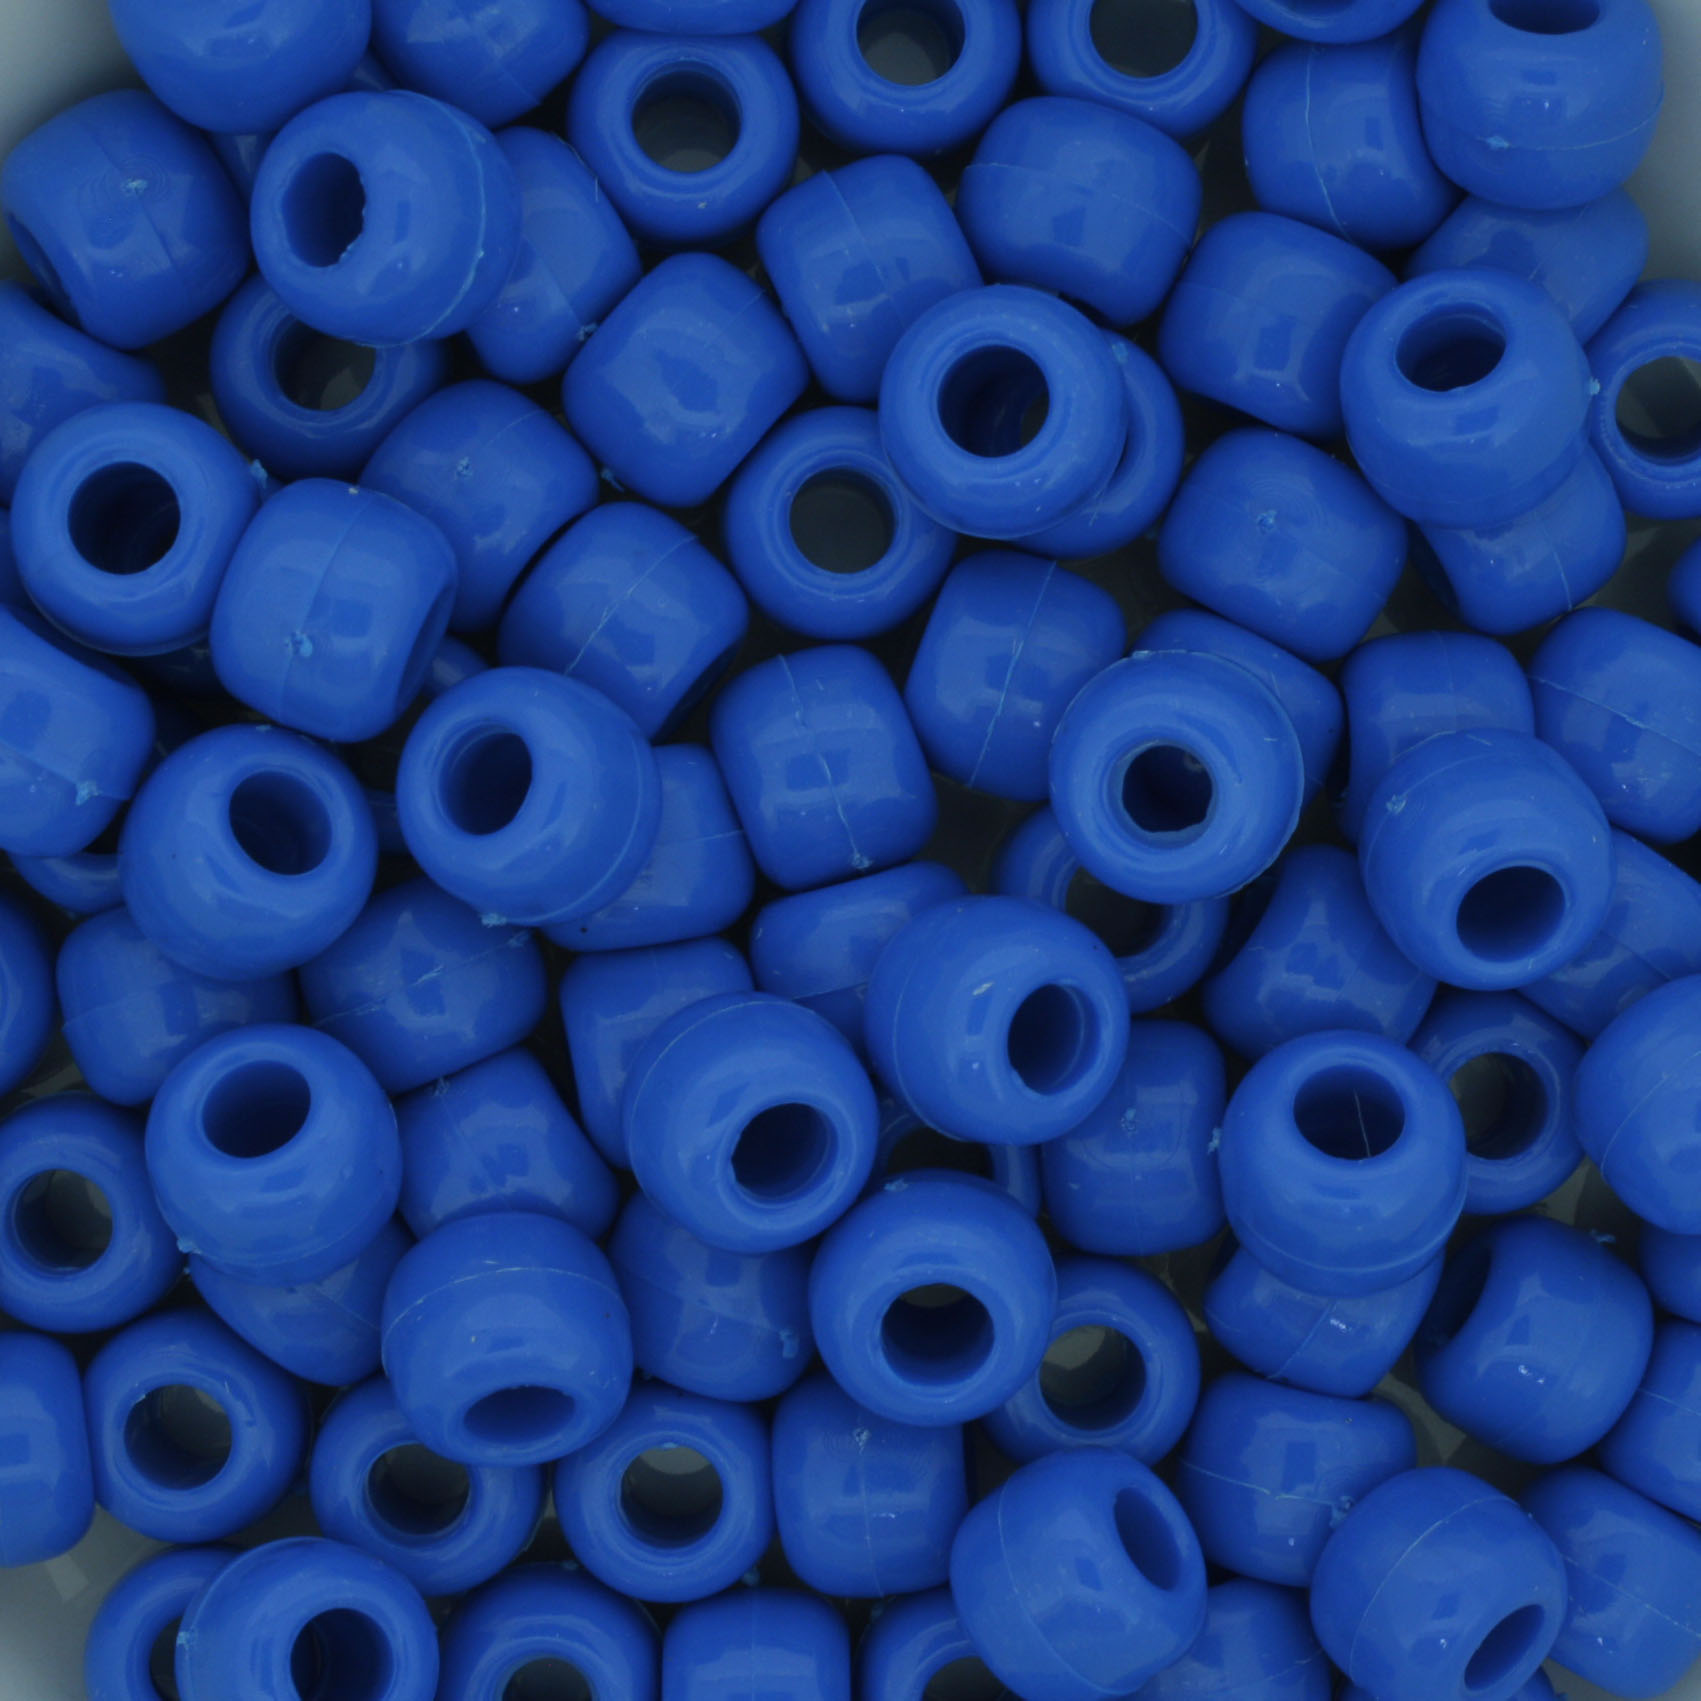 Miçangão Plástico - Tererê® - Azul Celeste  - Stéphanie Bijoux® - Peças para Bijuterias e Artesanato